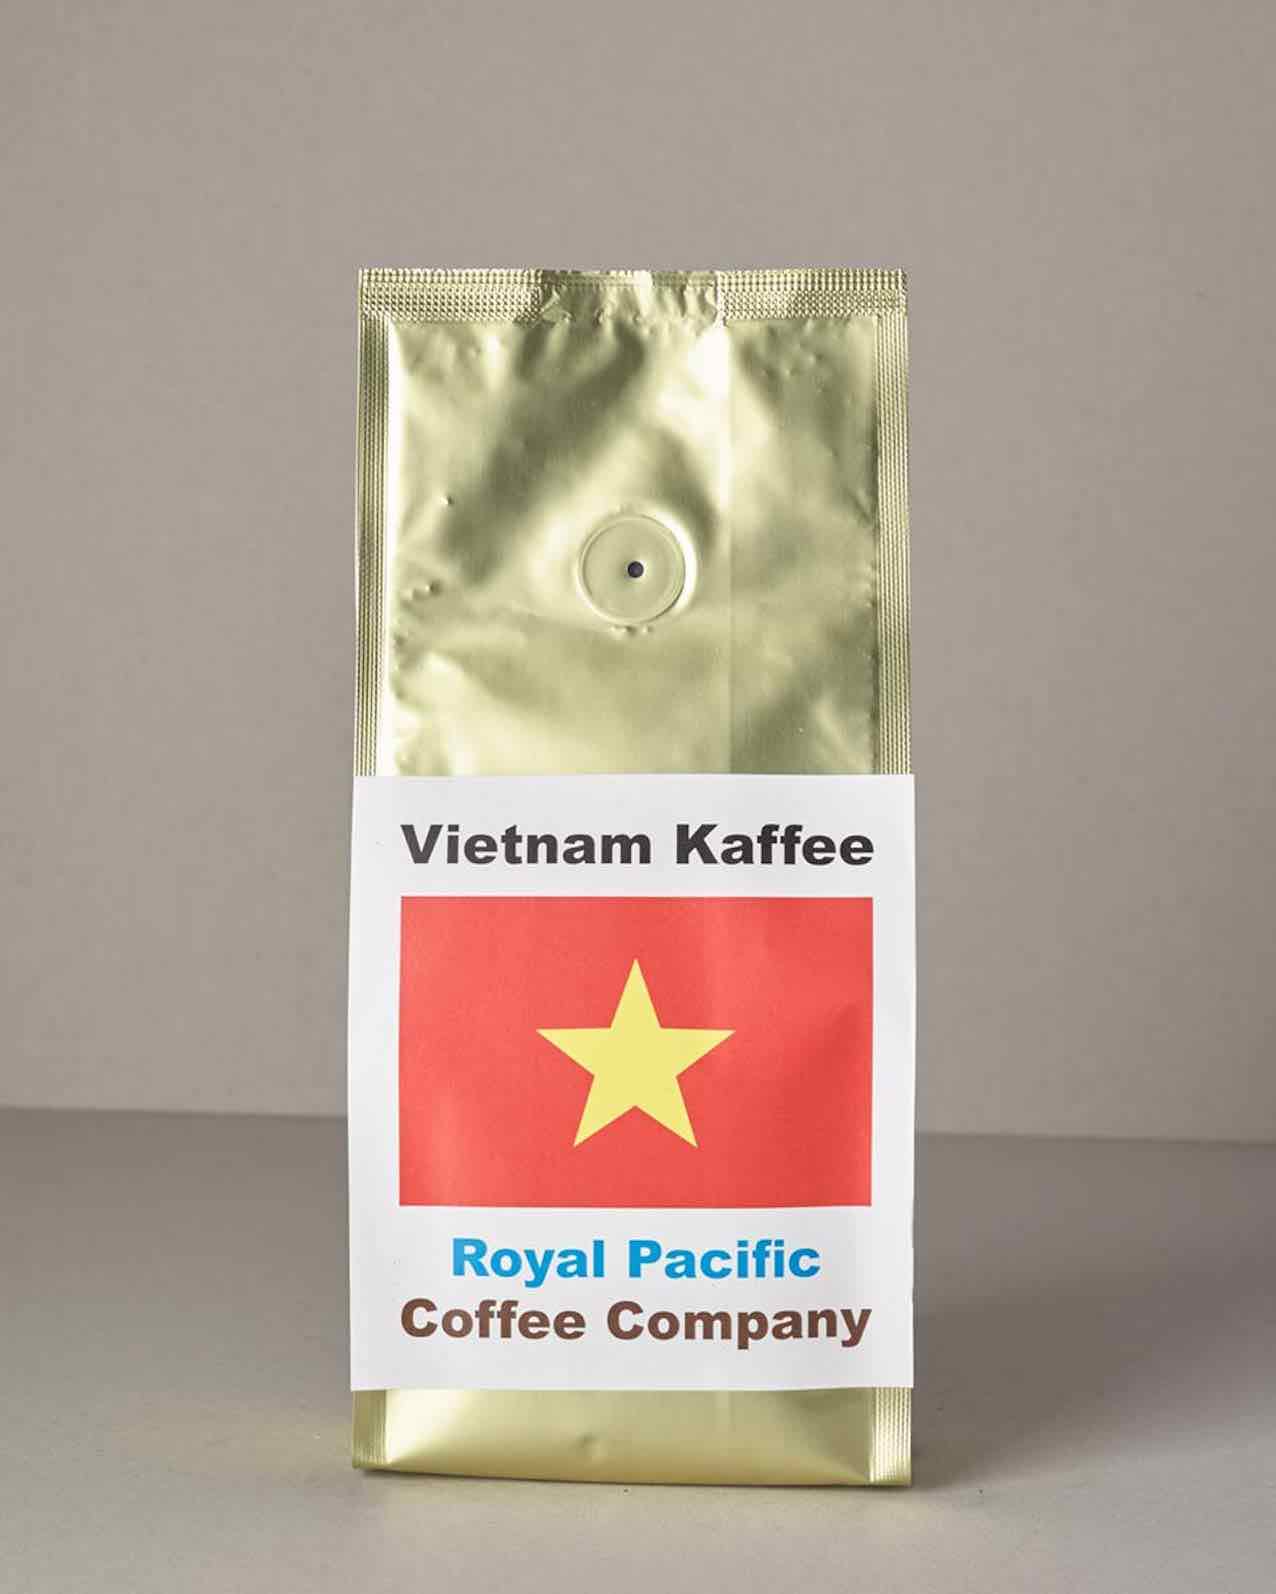 Original Kaffee Filter Inox für Vietnam Kaffee